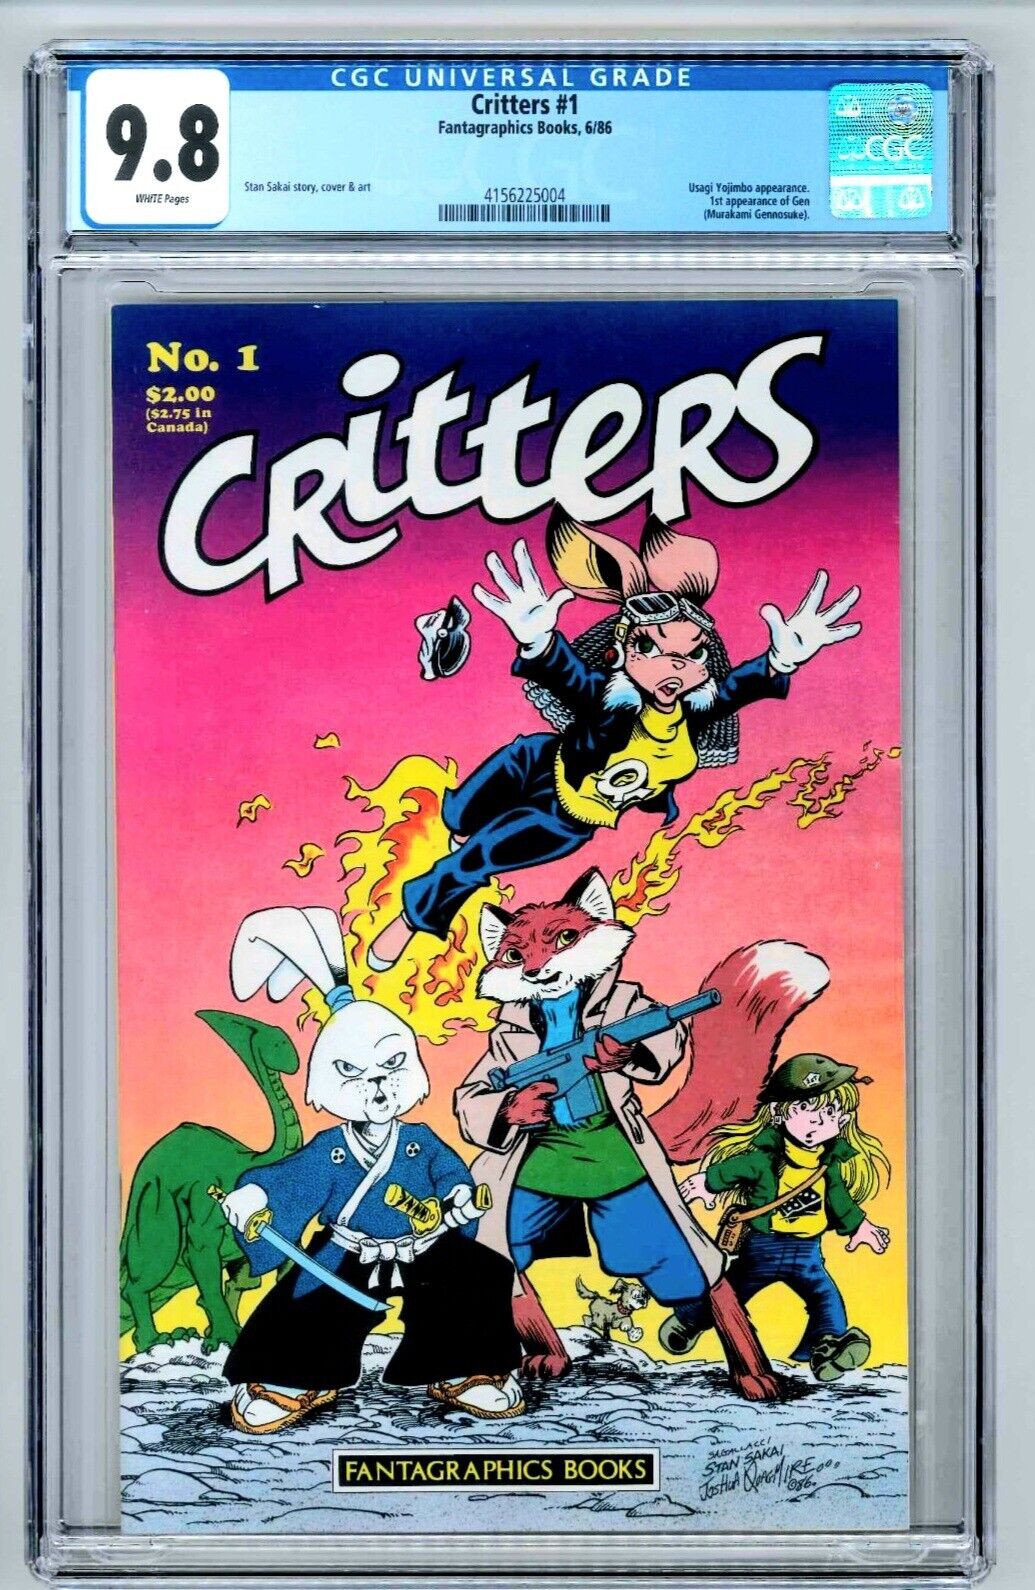 Critters #1 - CGC 9.8, Usagi Yojimbo Appearance